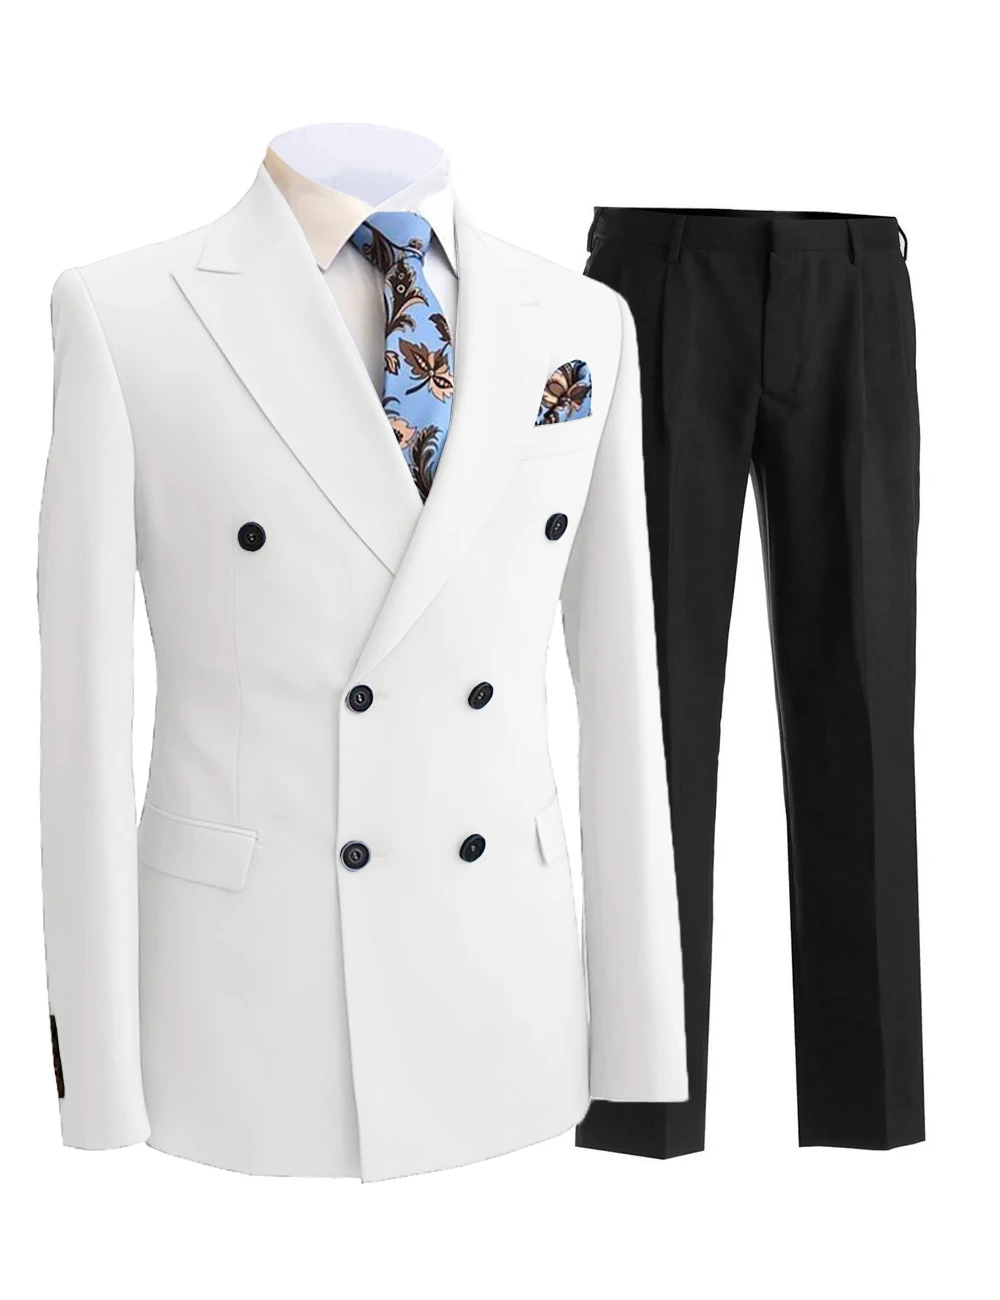 2 adet beyefendi kruvaze tepe yaka Blazer erkek takım elbise pantolon resmi beyaz bej ceket düğün damat smokin